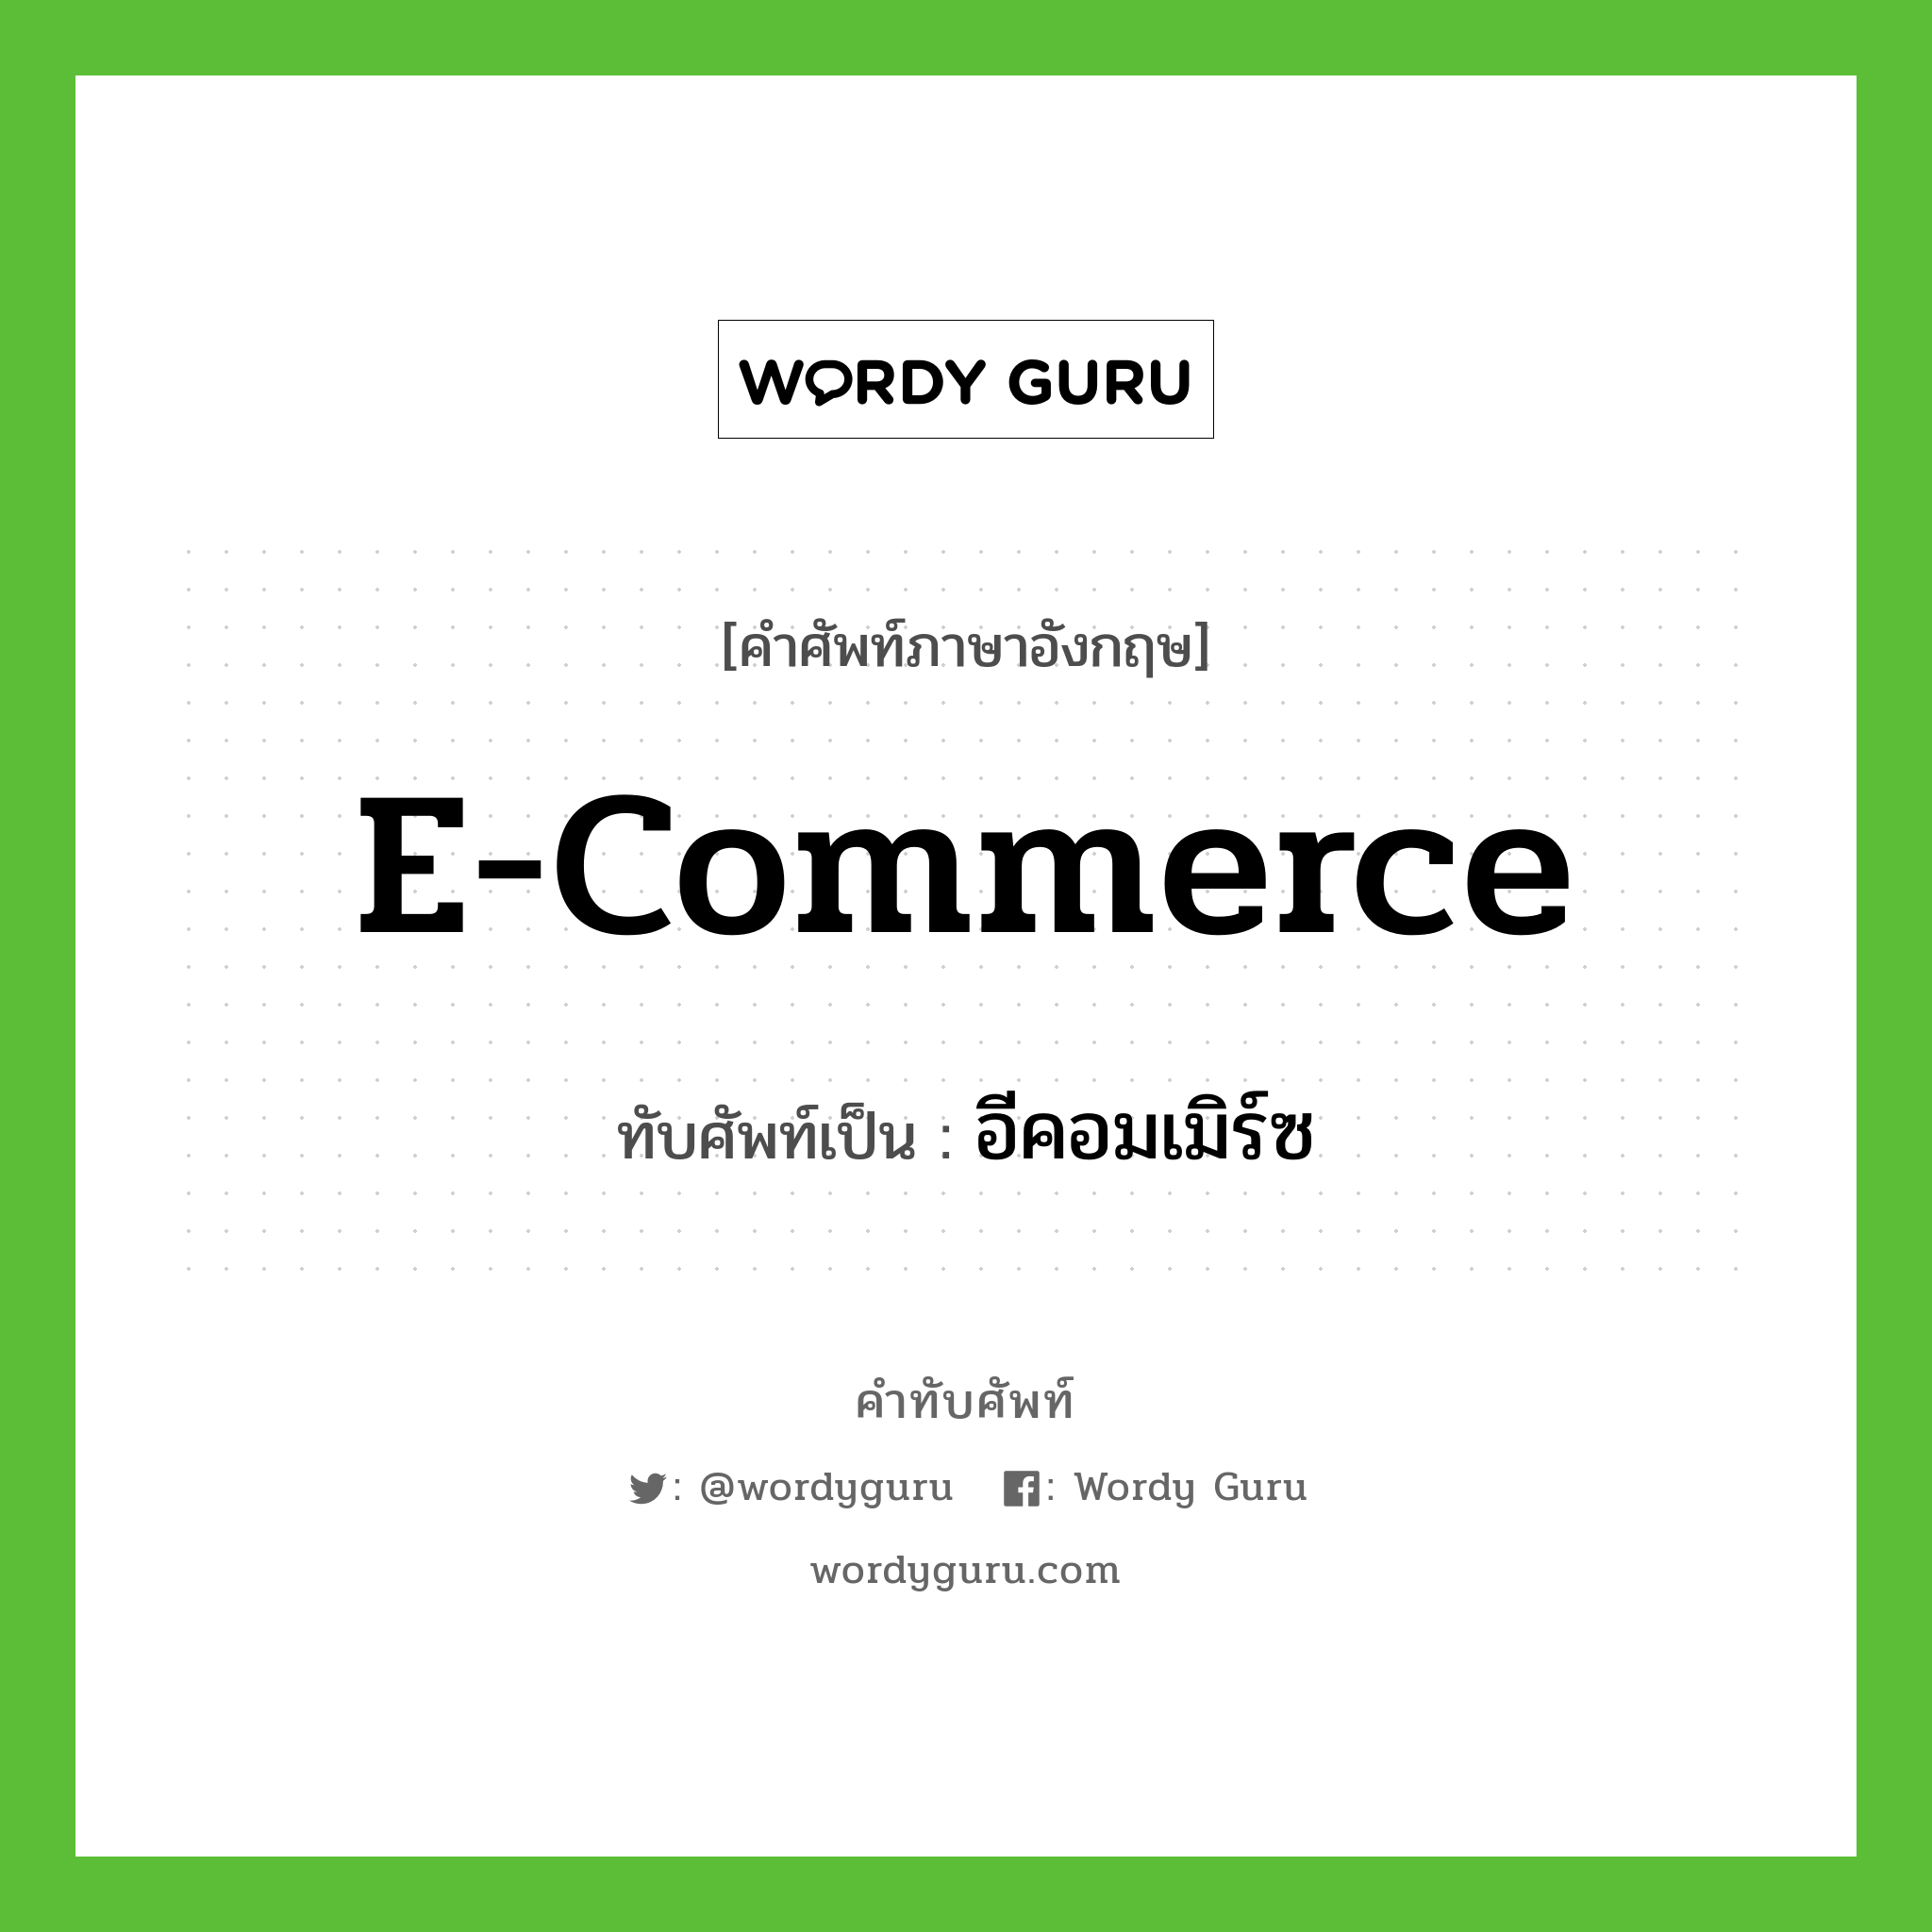 อีคอมเมิร์ซ เขียนอย่างไร?, คำศัพท์ภาษาอังกฤษ อีคอมเมิร์ซ ทับศัพท์เป็น e-commerce